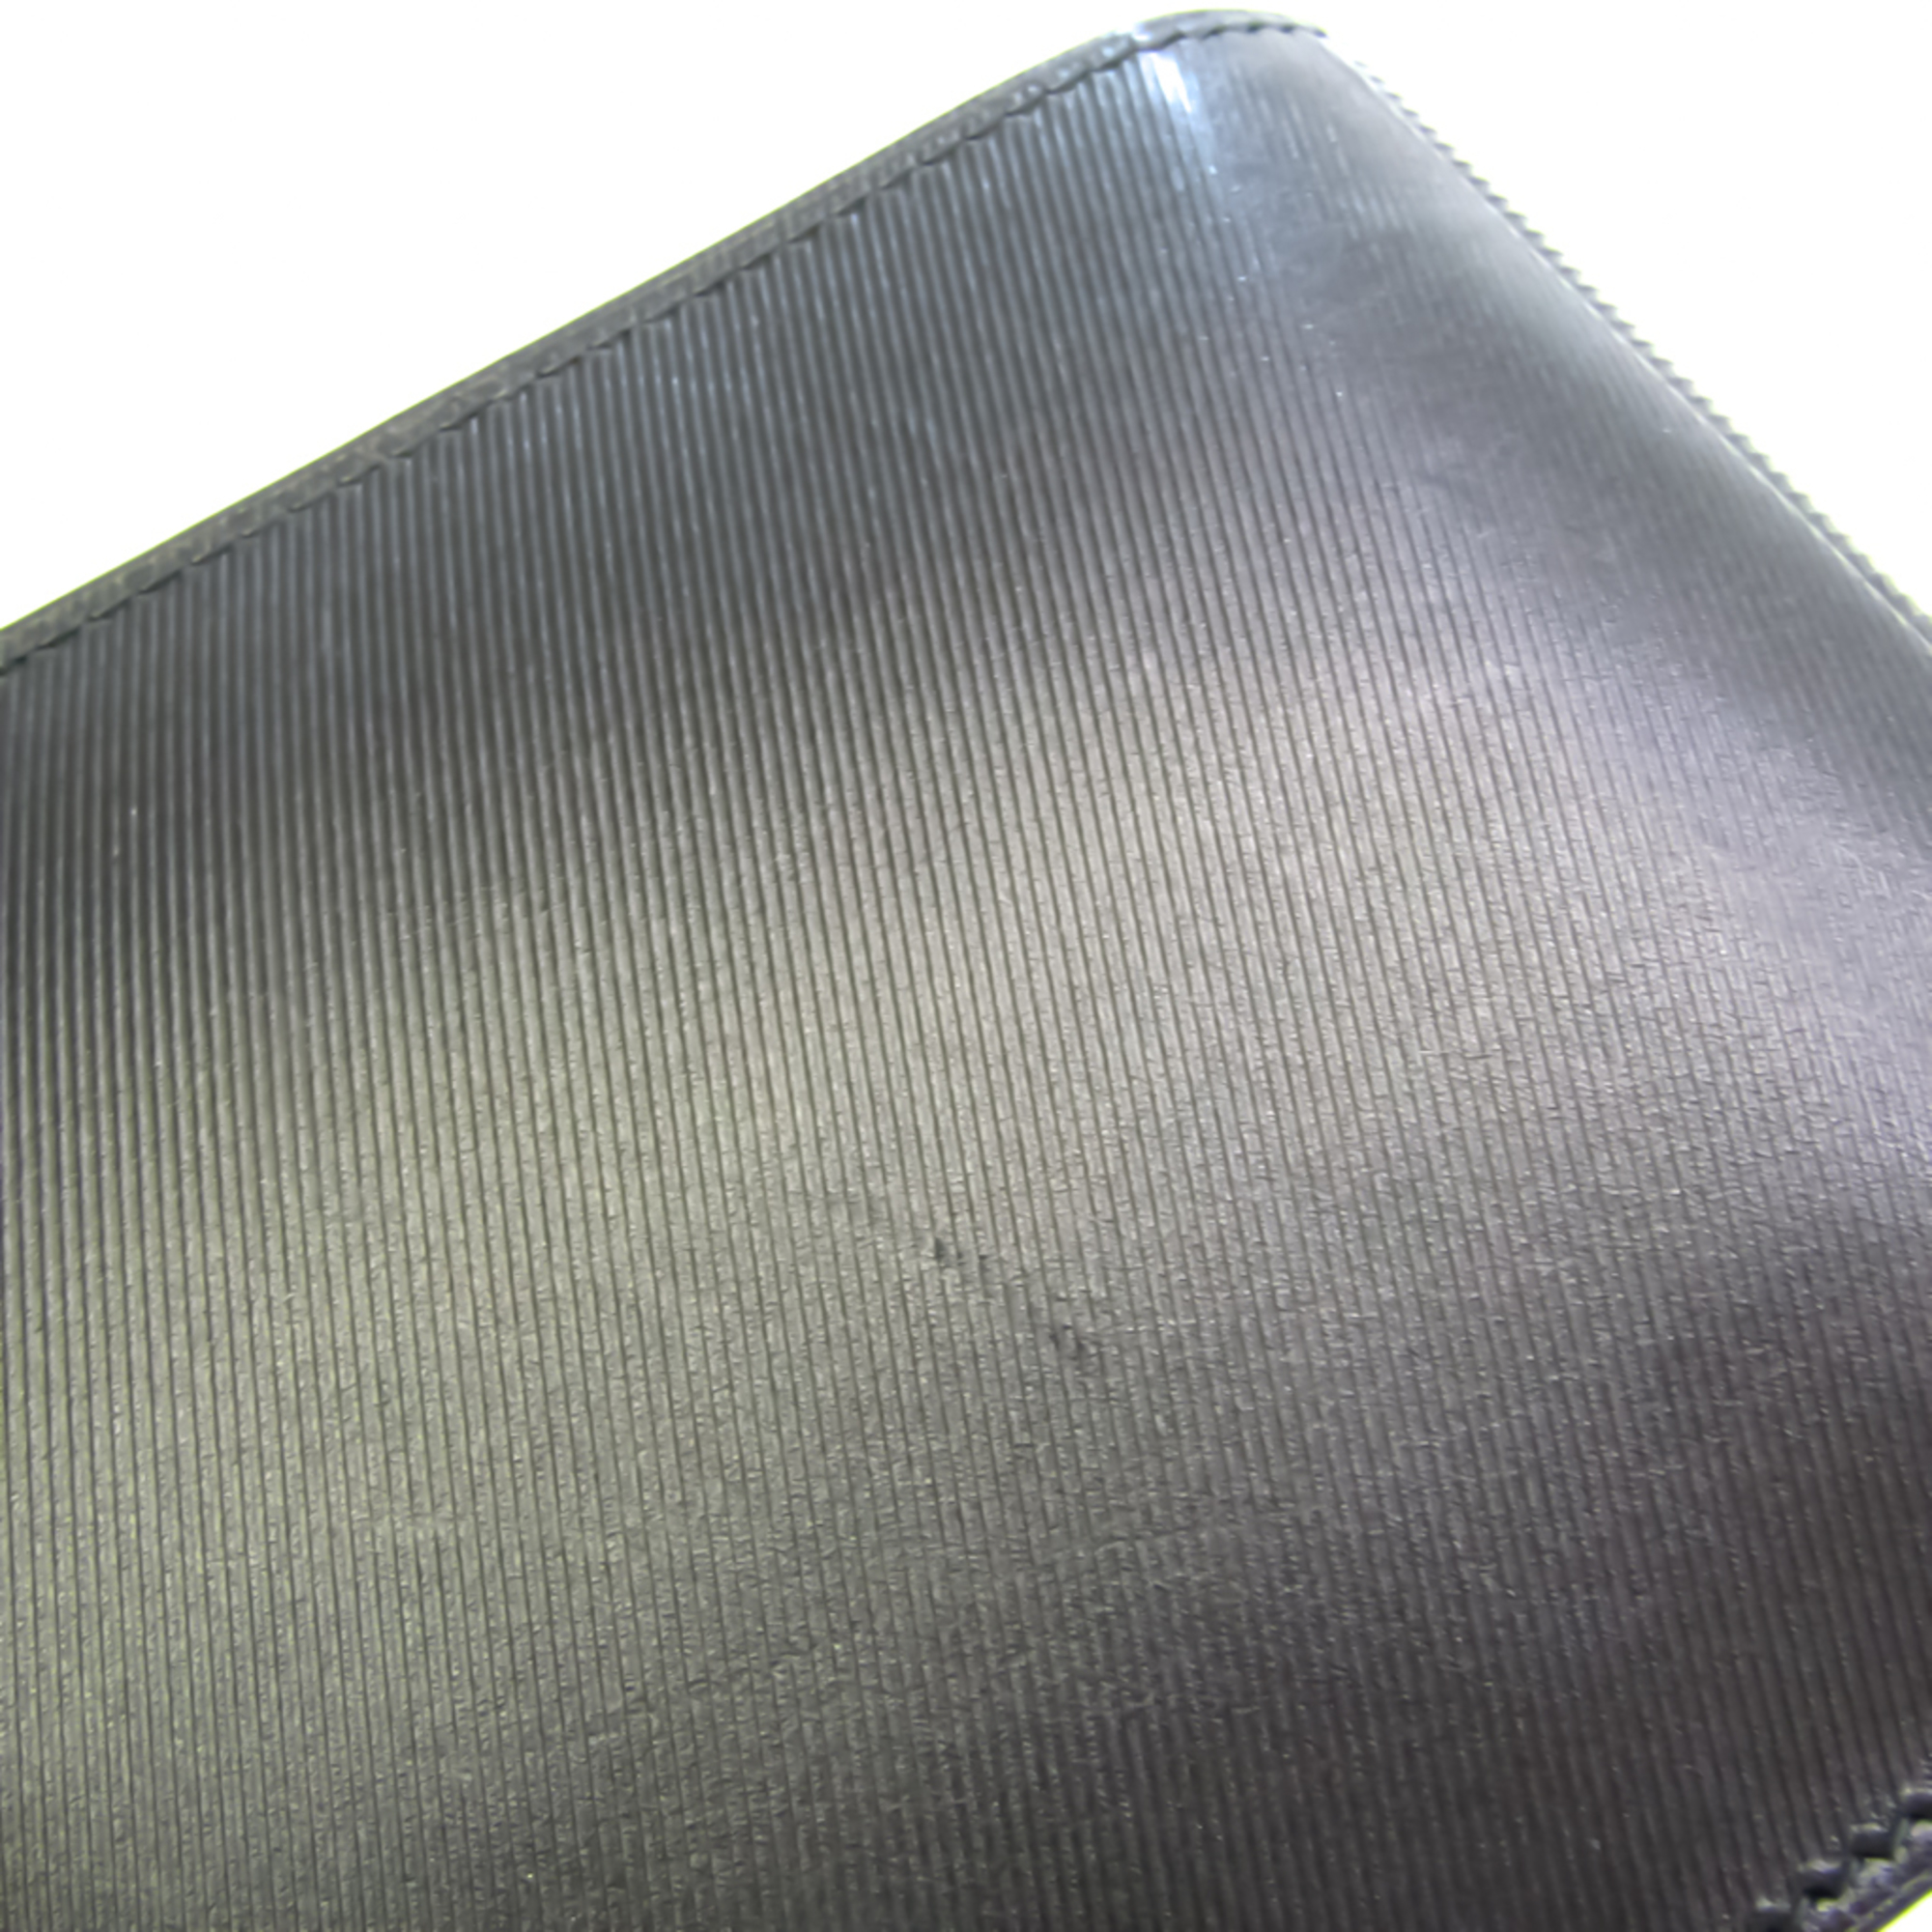 Balenciaga 506001 Men's Leather Wallet (bi-fold) Black